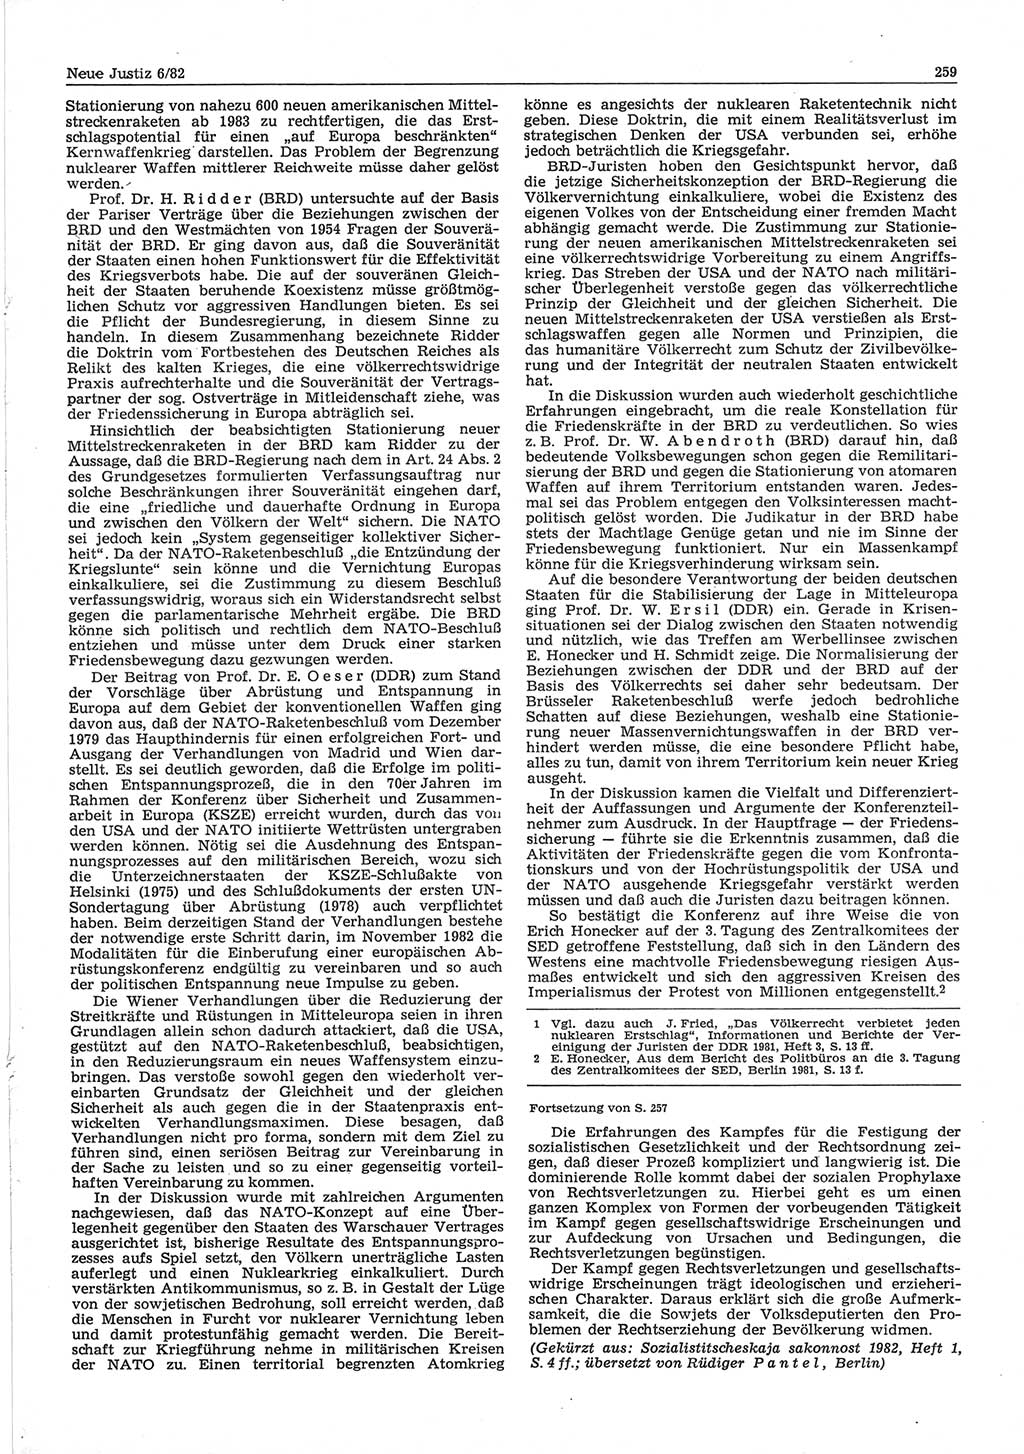 Neue Justiz (NJ), Zeitschrift für sozialistisches Recht und Gesetzlichkeit [Deutsche Demokratische Republik (DDR)], 36. Jahrgang 1982, Seite 259 (NJ DDR 1982, S. 259)